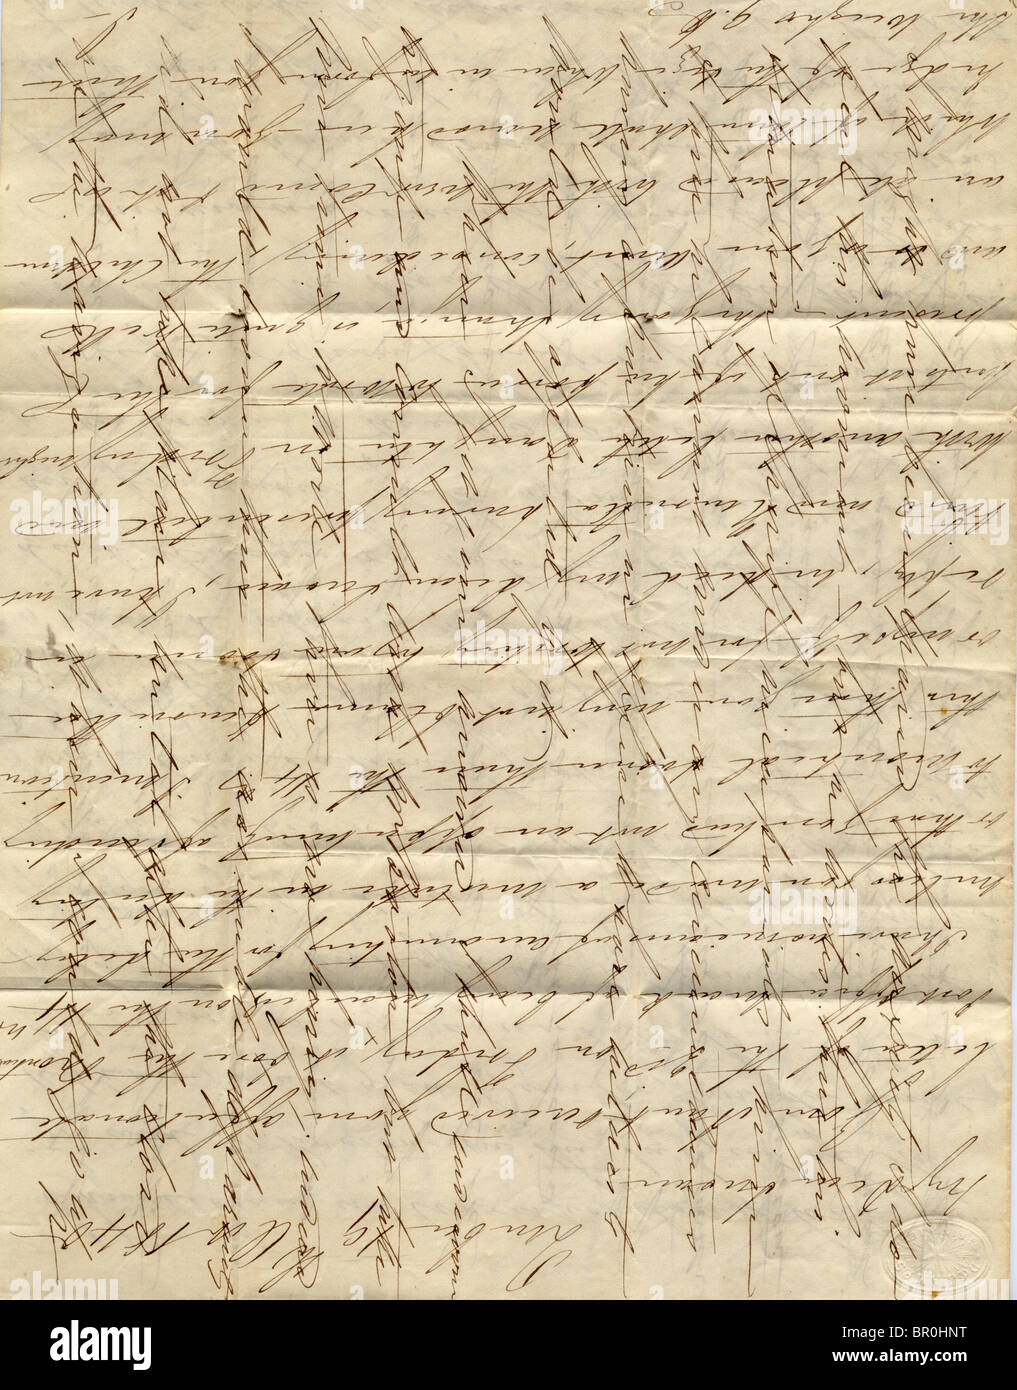 Vintage lettre manuscrite avec marques de pliage Banque D'Images